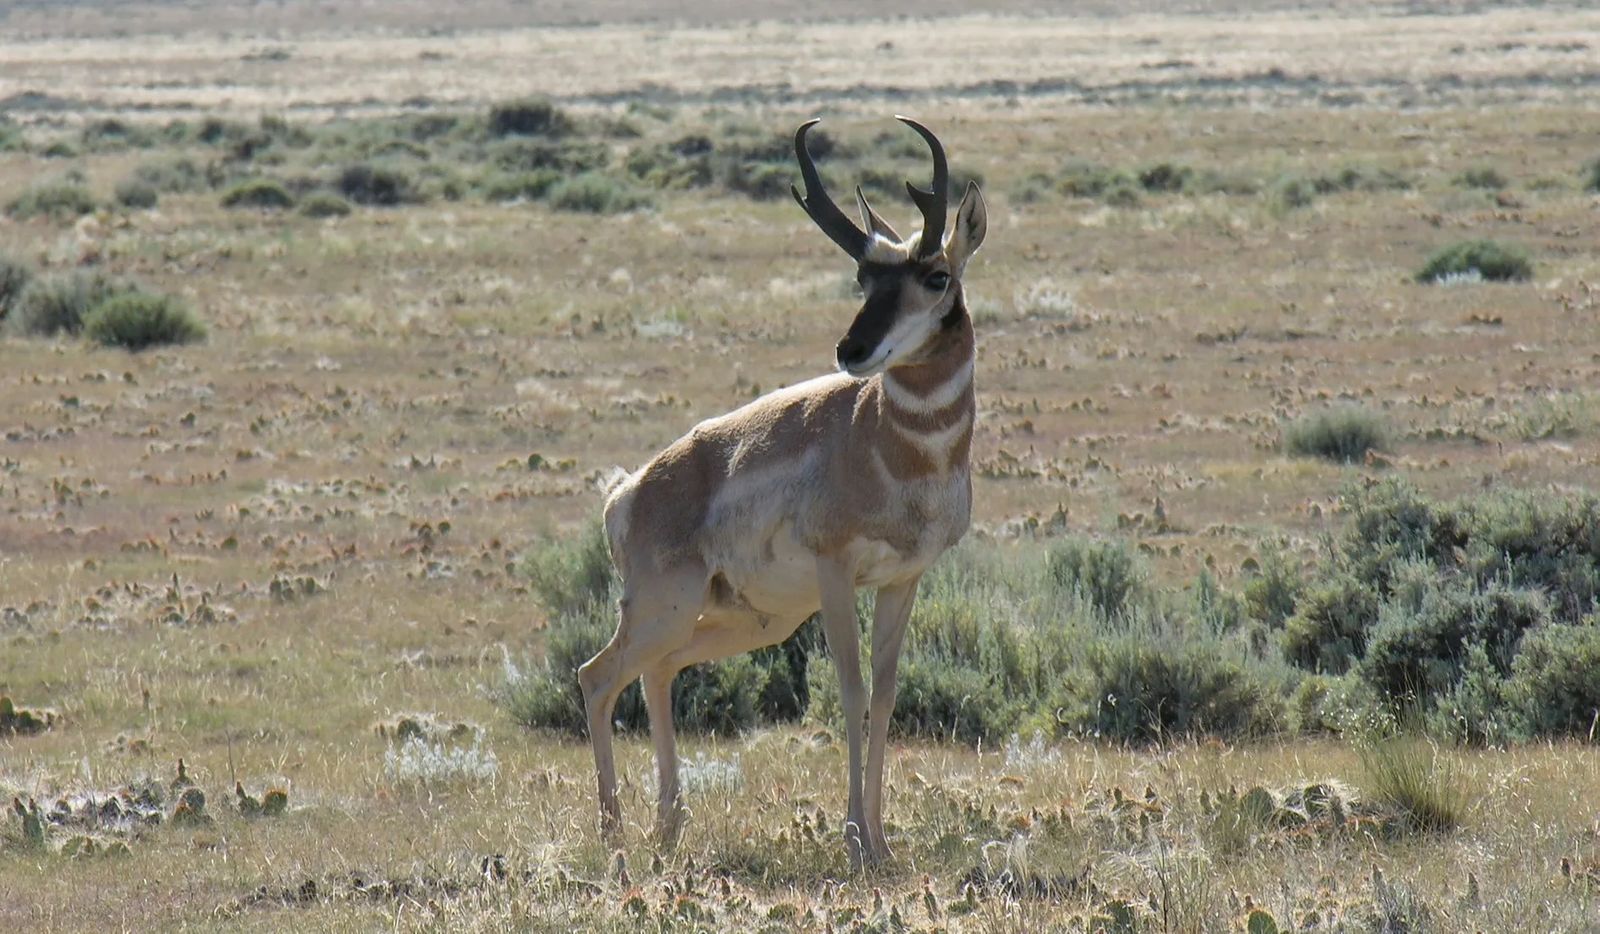 Montana Antelope Hunting Season Begins Soon